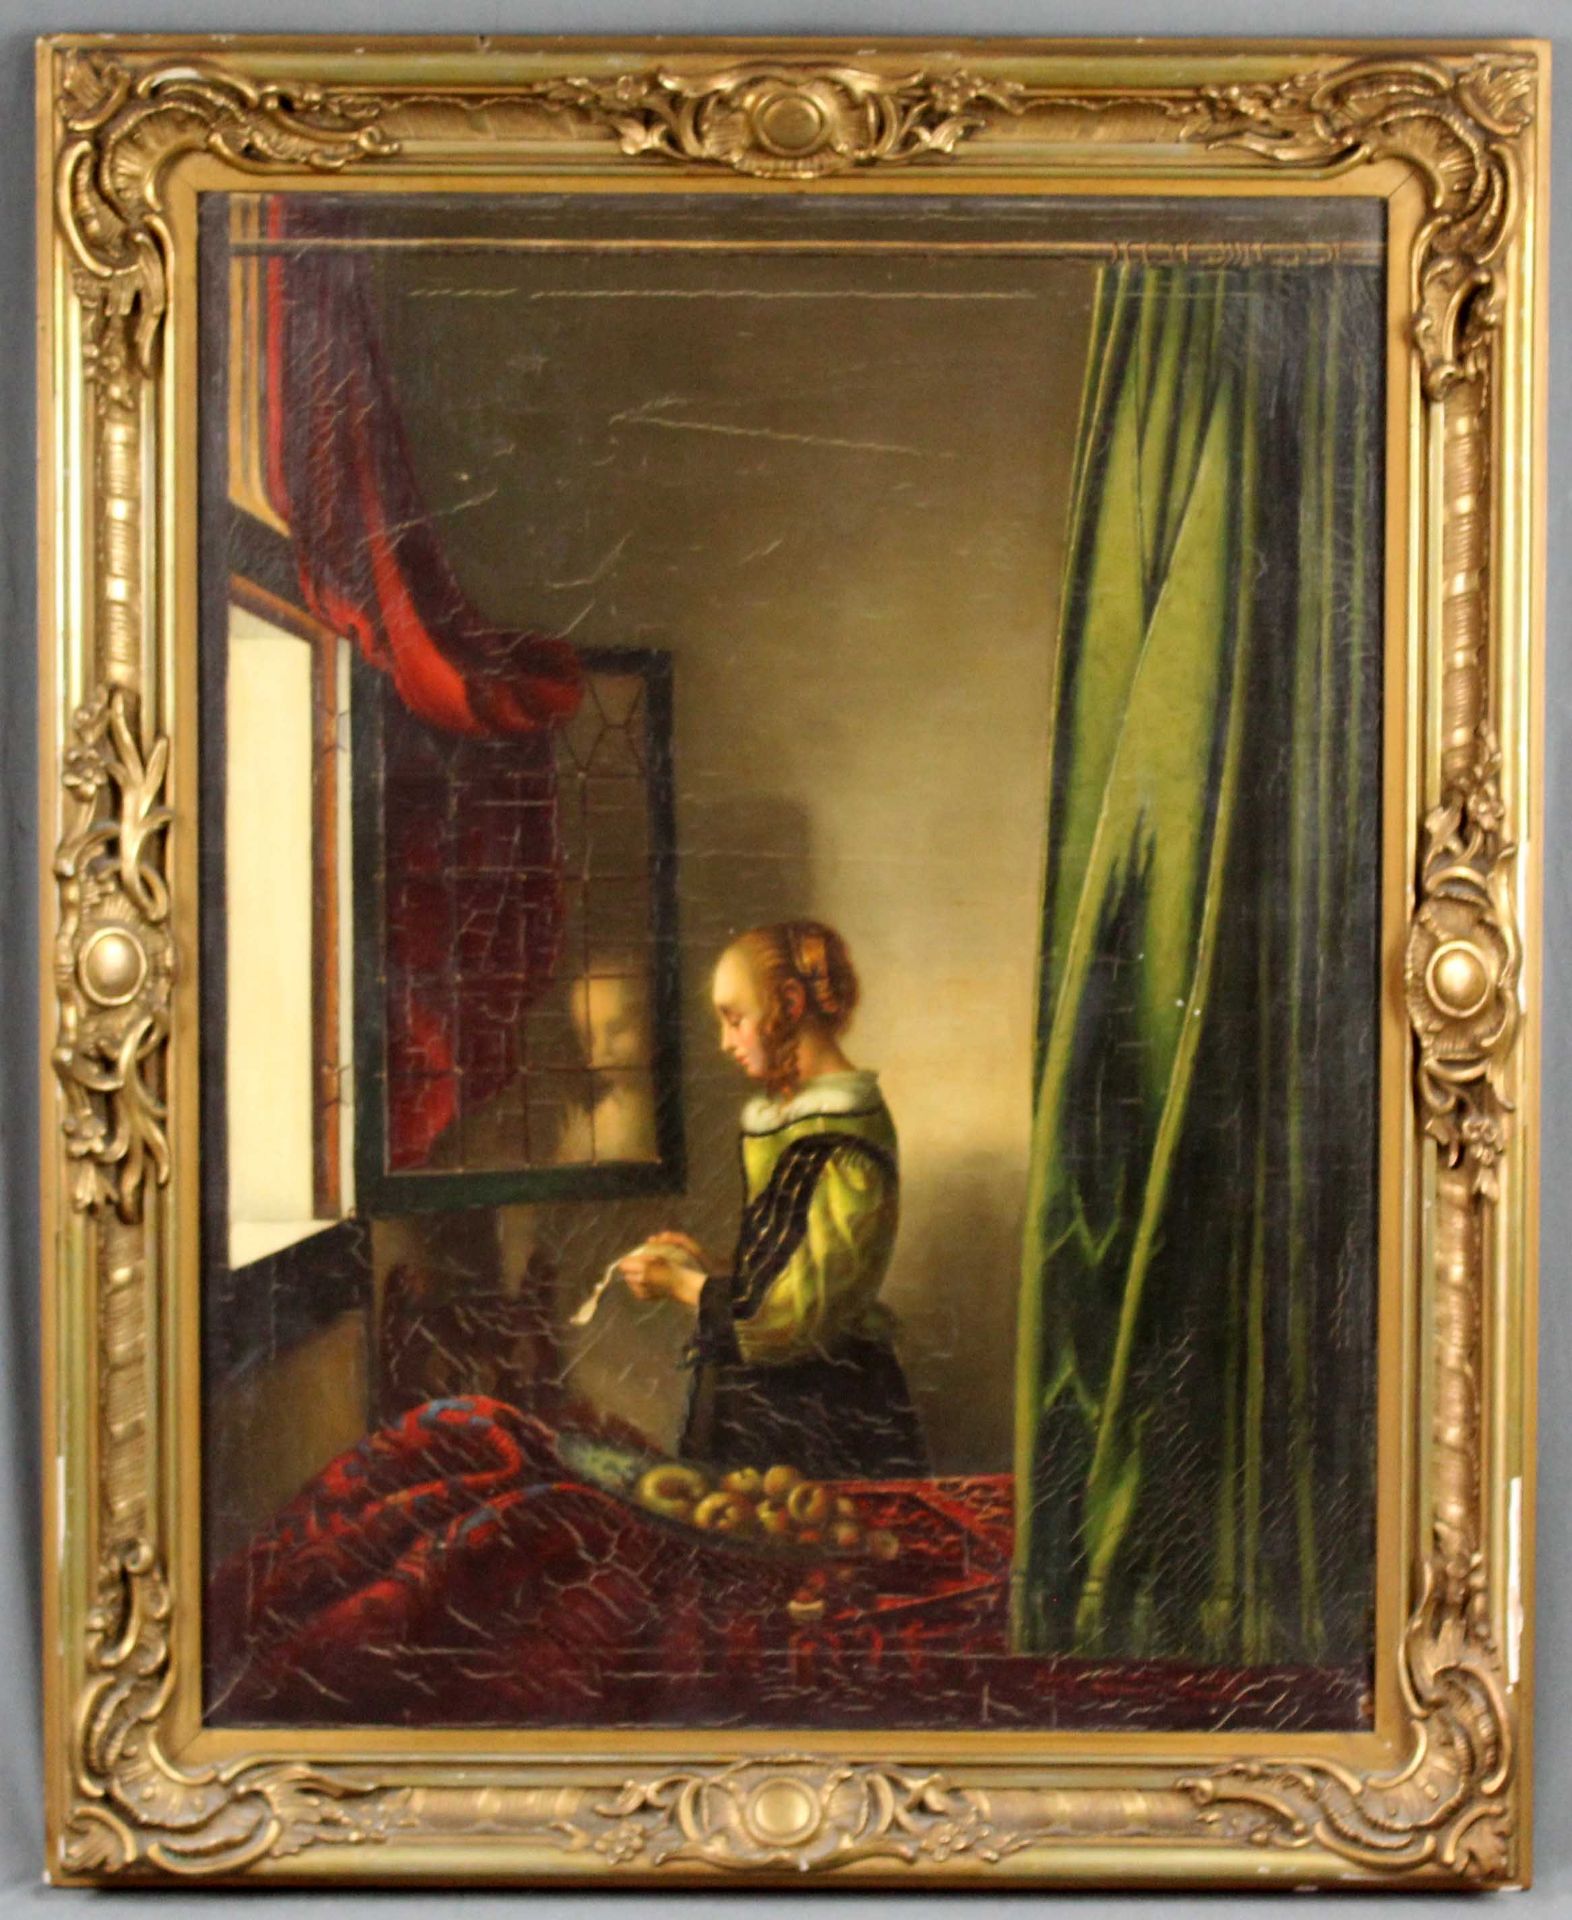 Nach Jan VERMEER VAN DELFT. "Brieflesendes Mädchen am offenen Fenster".83 cm x 64,5 cm. Gemälde. - Bild 9 aus 9